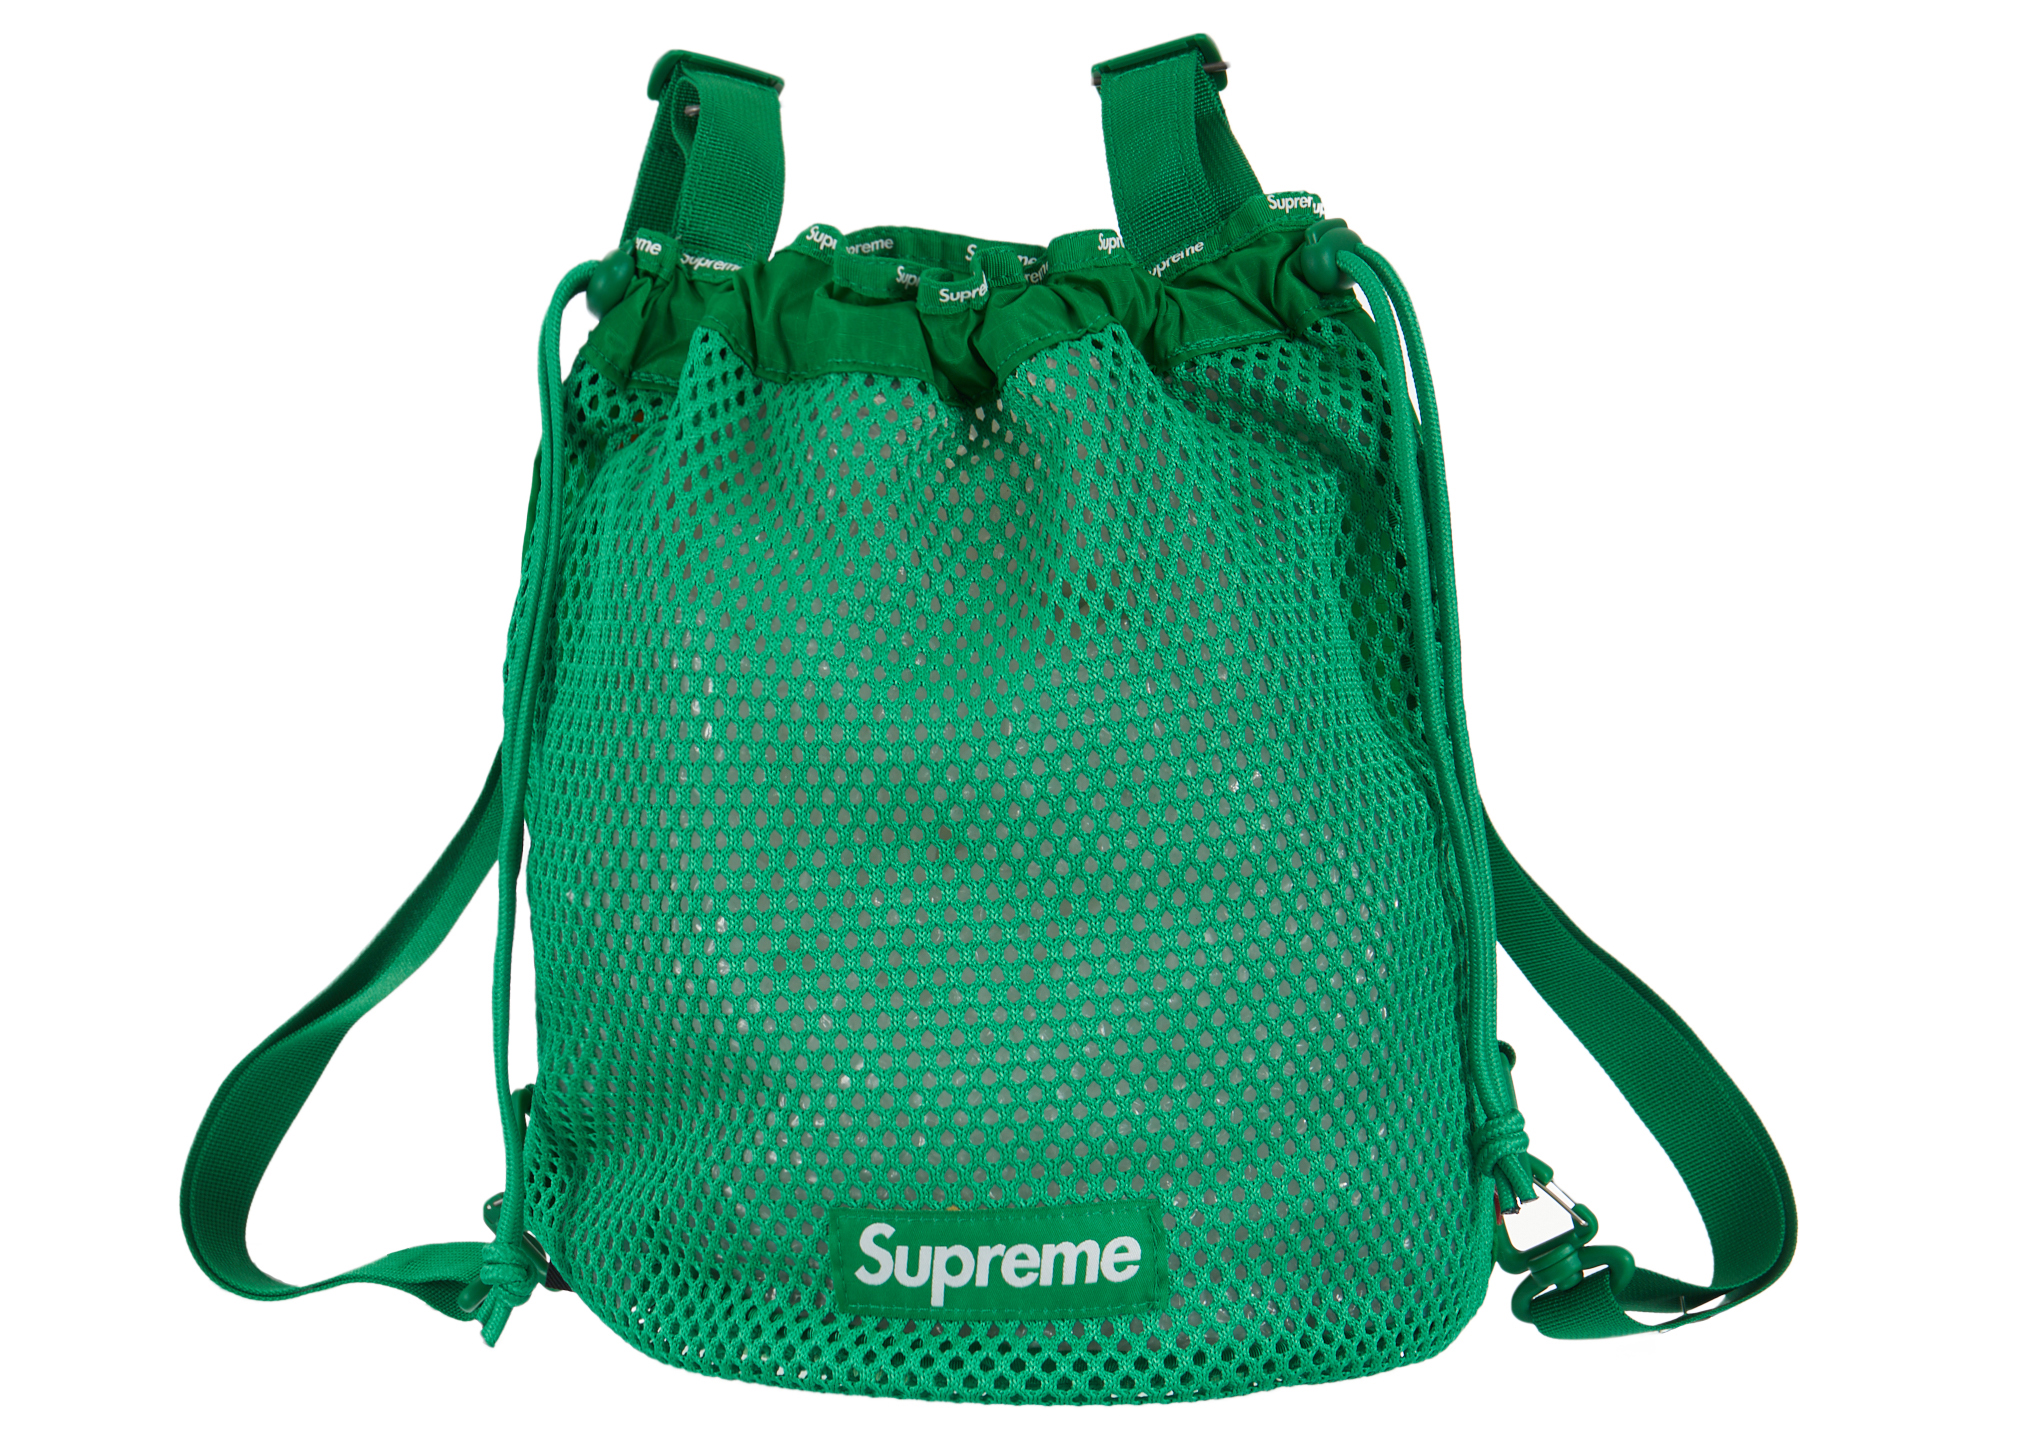 SUPREME mesh backpack green